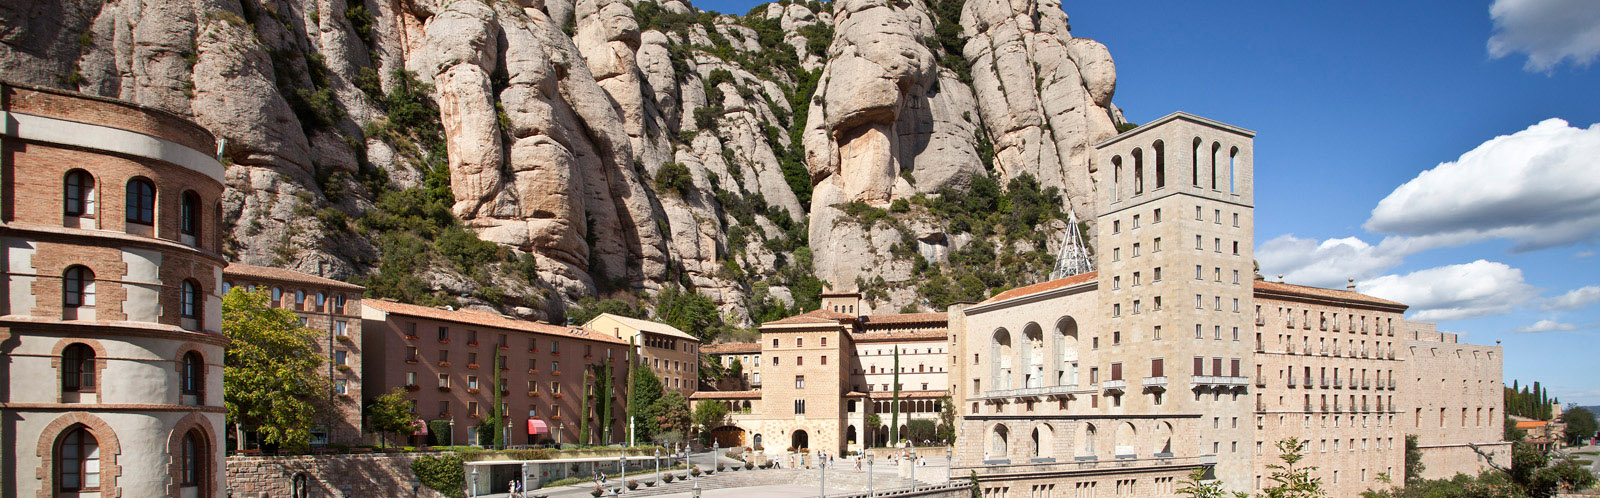 Vista panoràmica del Santuari de Montserrat - Vista panorámica del Santuario de Montserrat